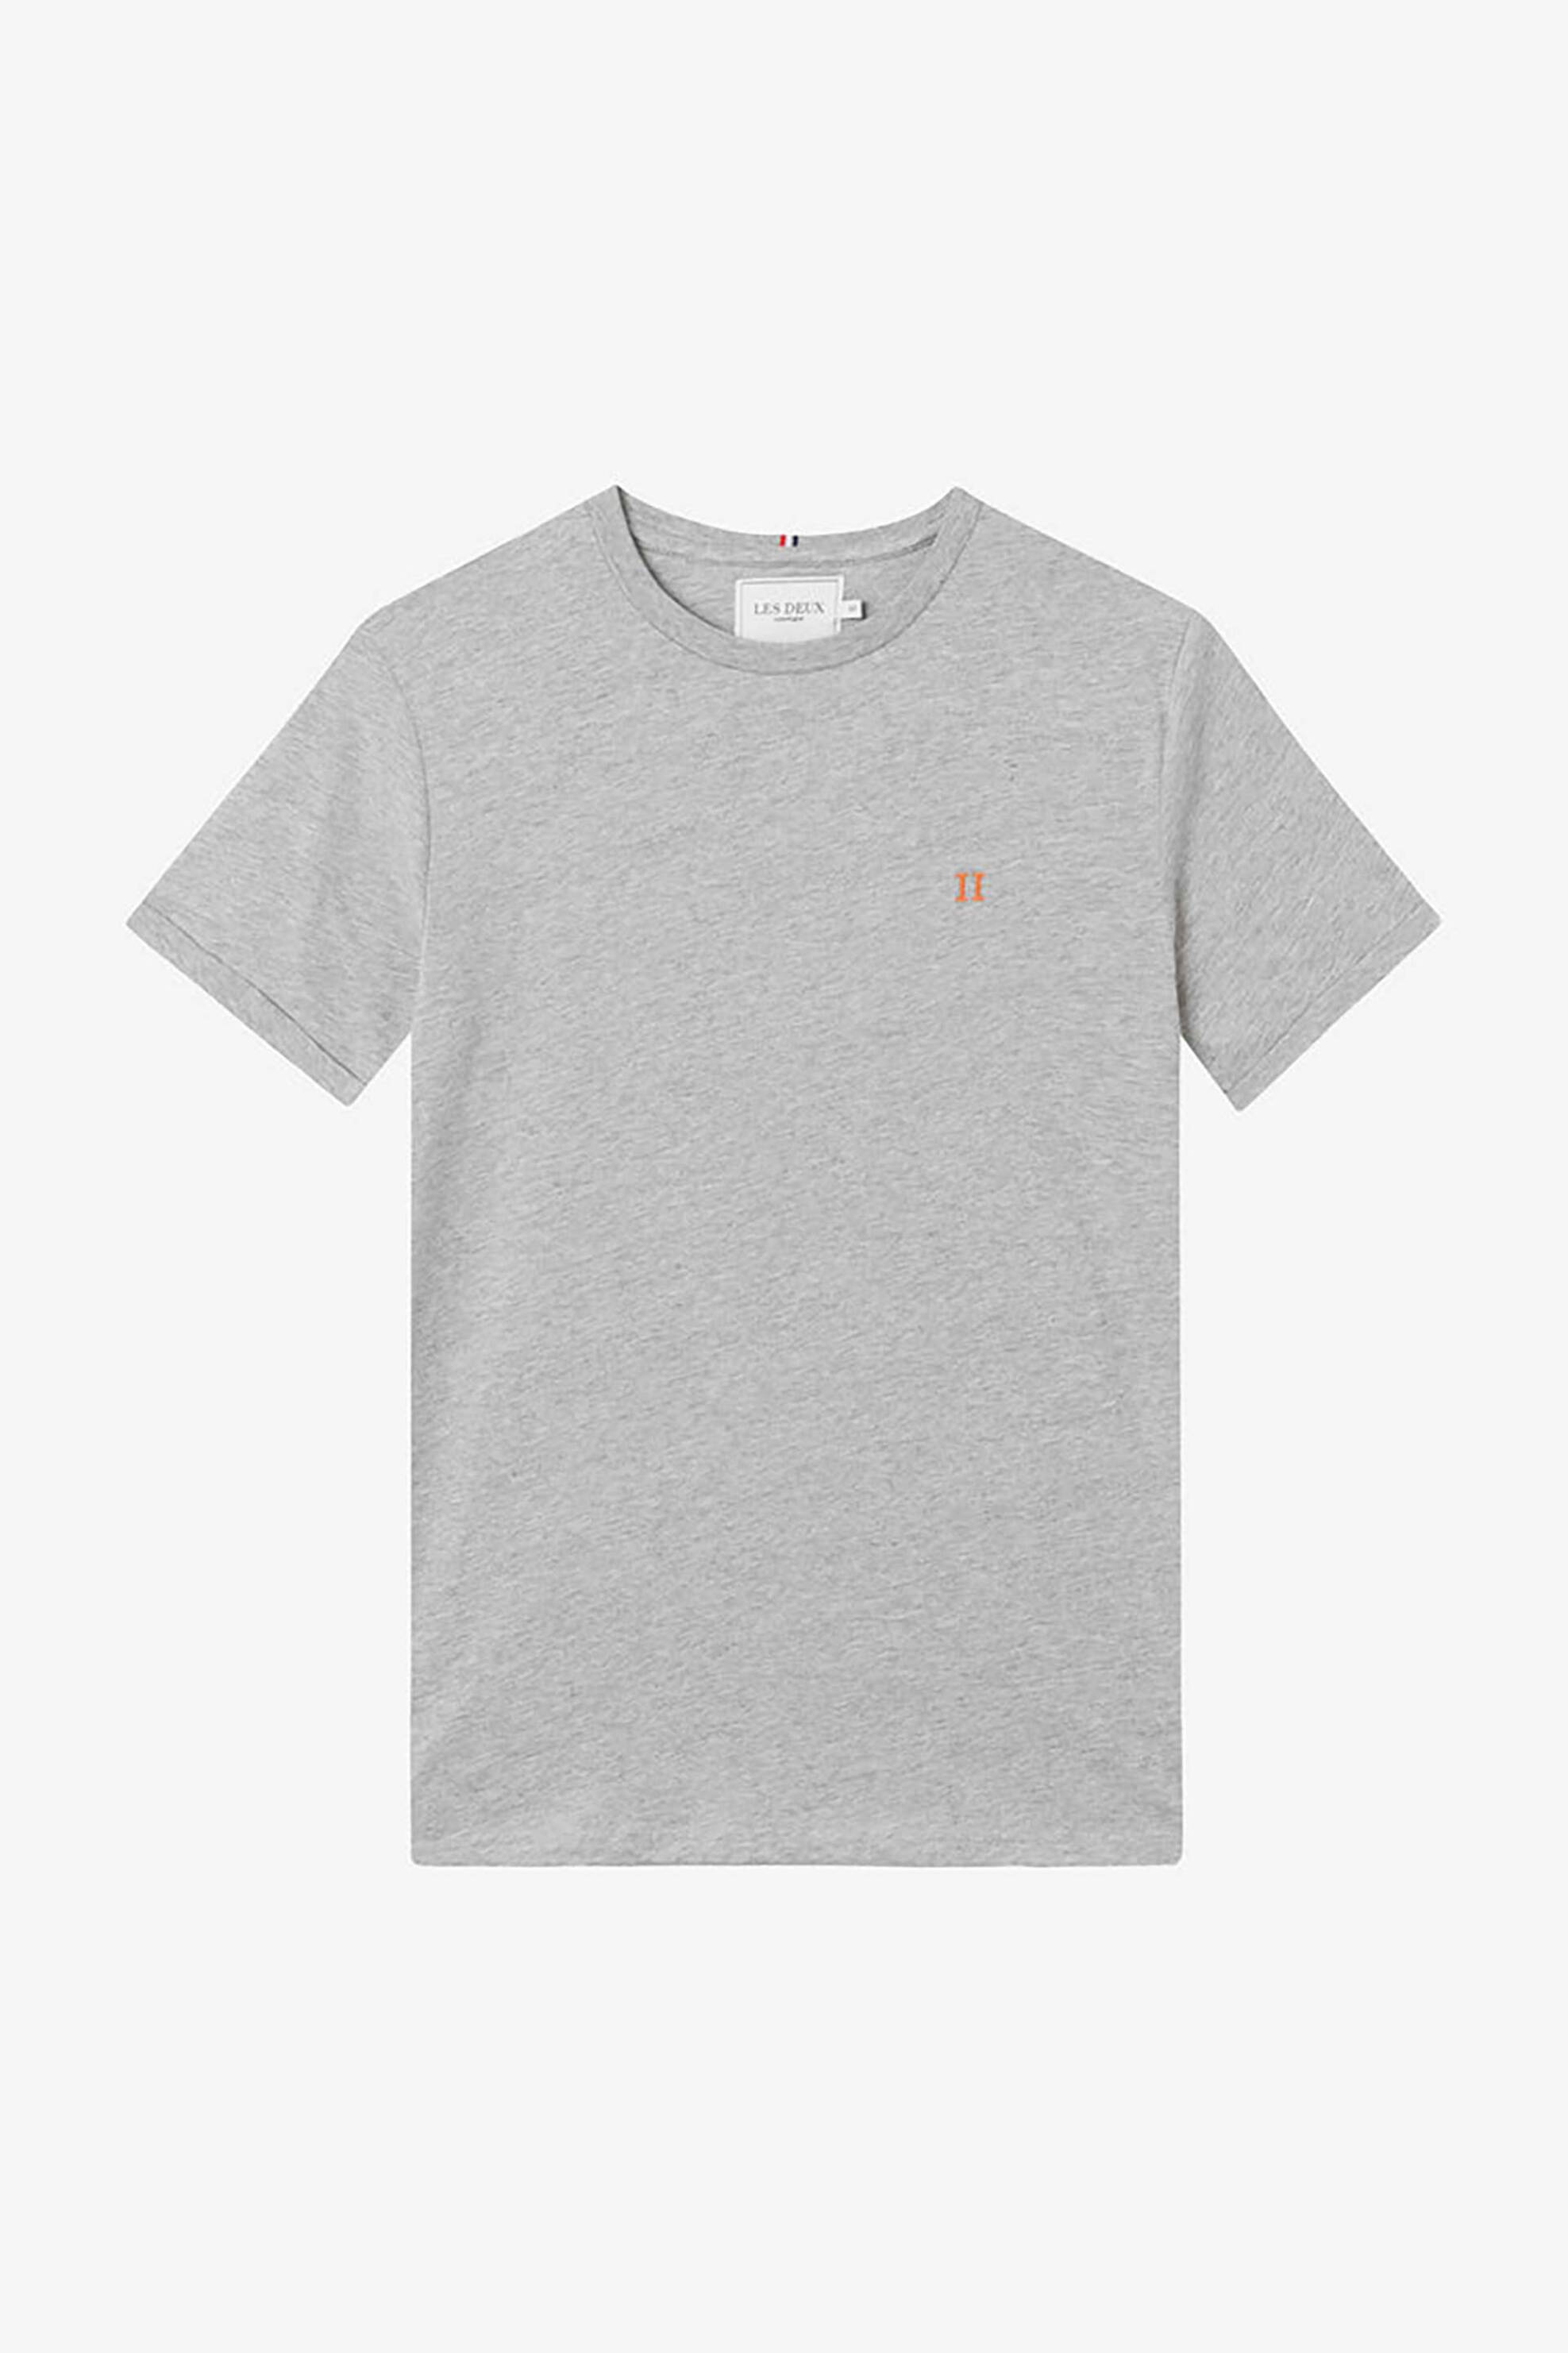 Ανδρική Μόδα > Ανδρικά Ρούχα > Ανδρικές Μπλούζες > Ανδρικά T-Shirts Les Deux ανδρικό T-shirt Slim Fit "Nørregaard" - LDM101008 Γκρι